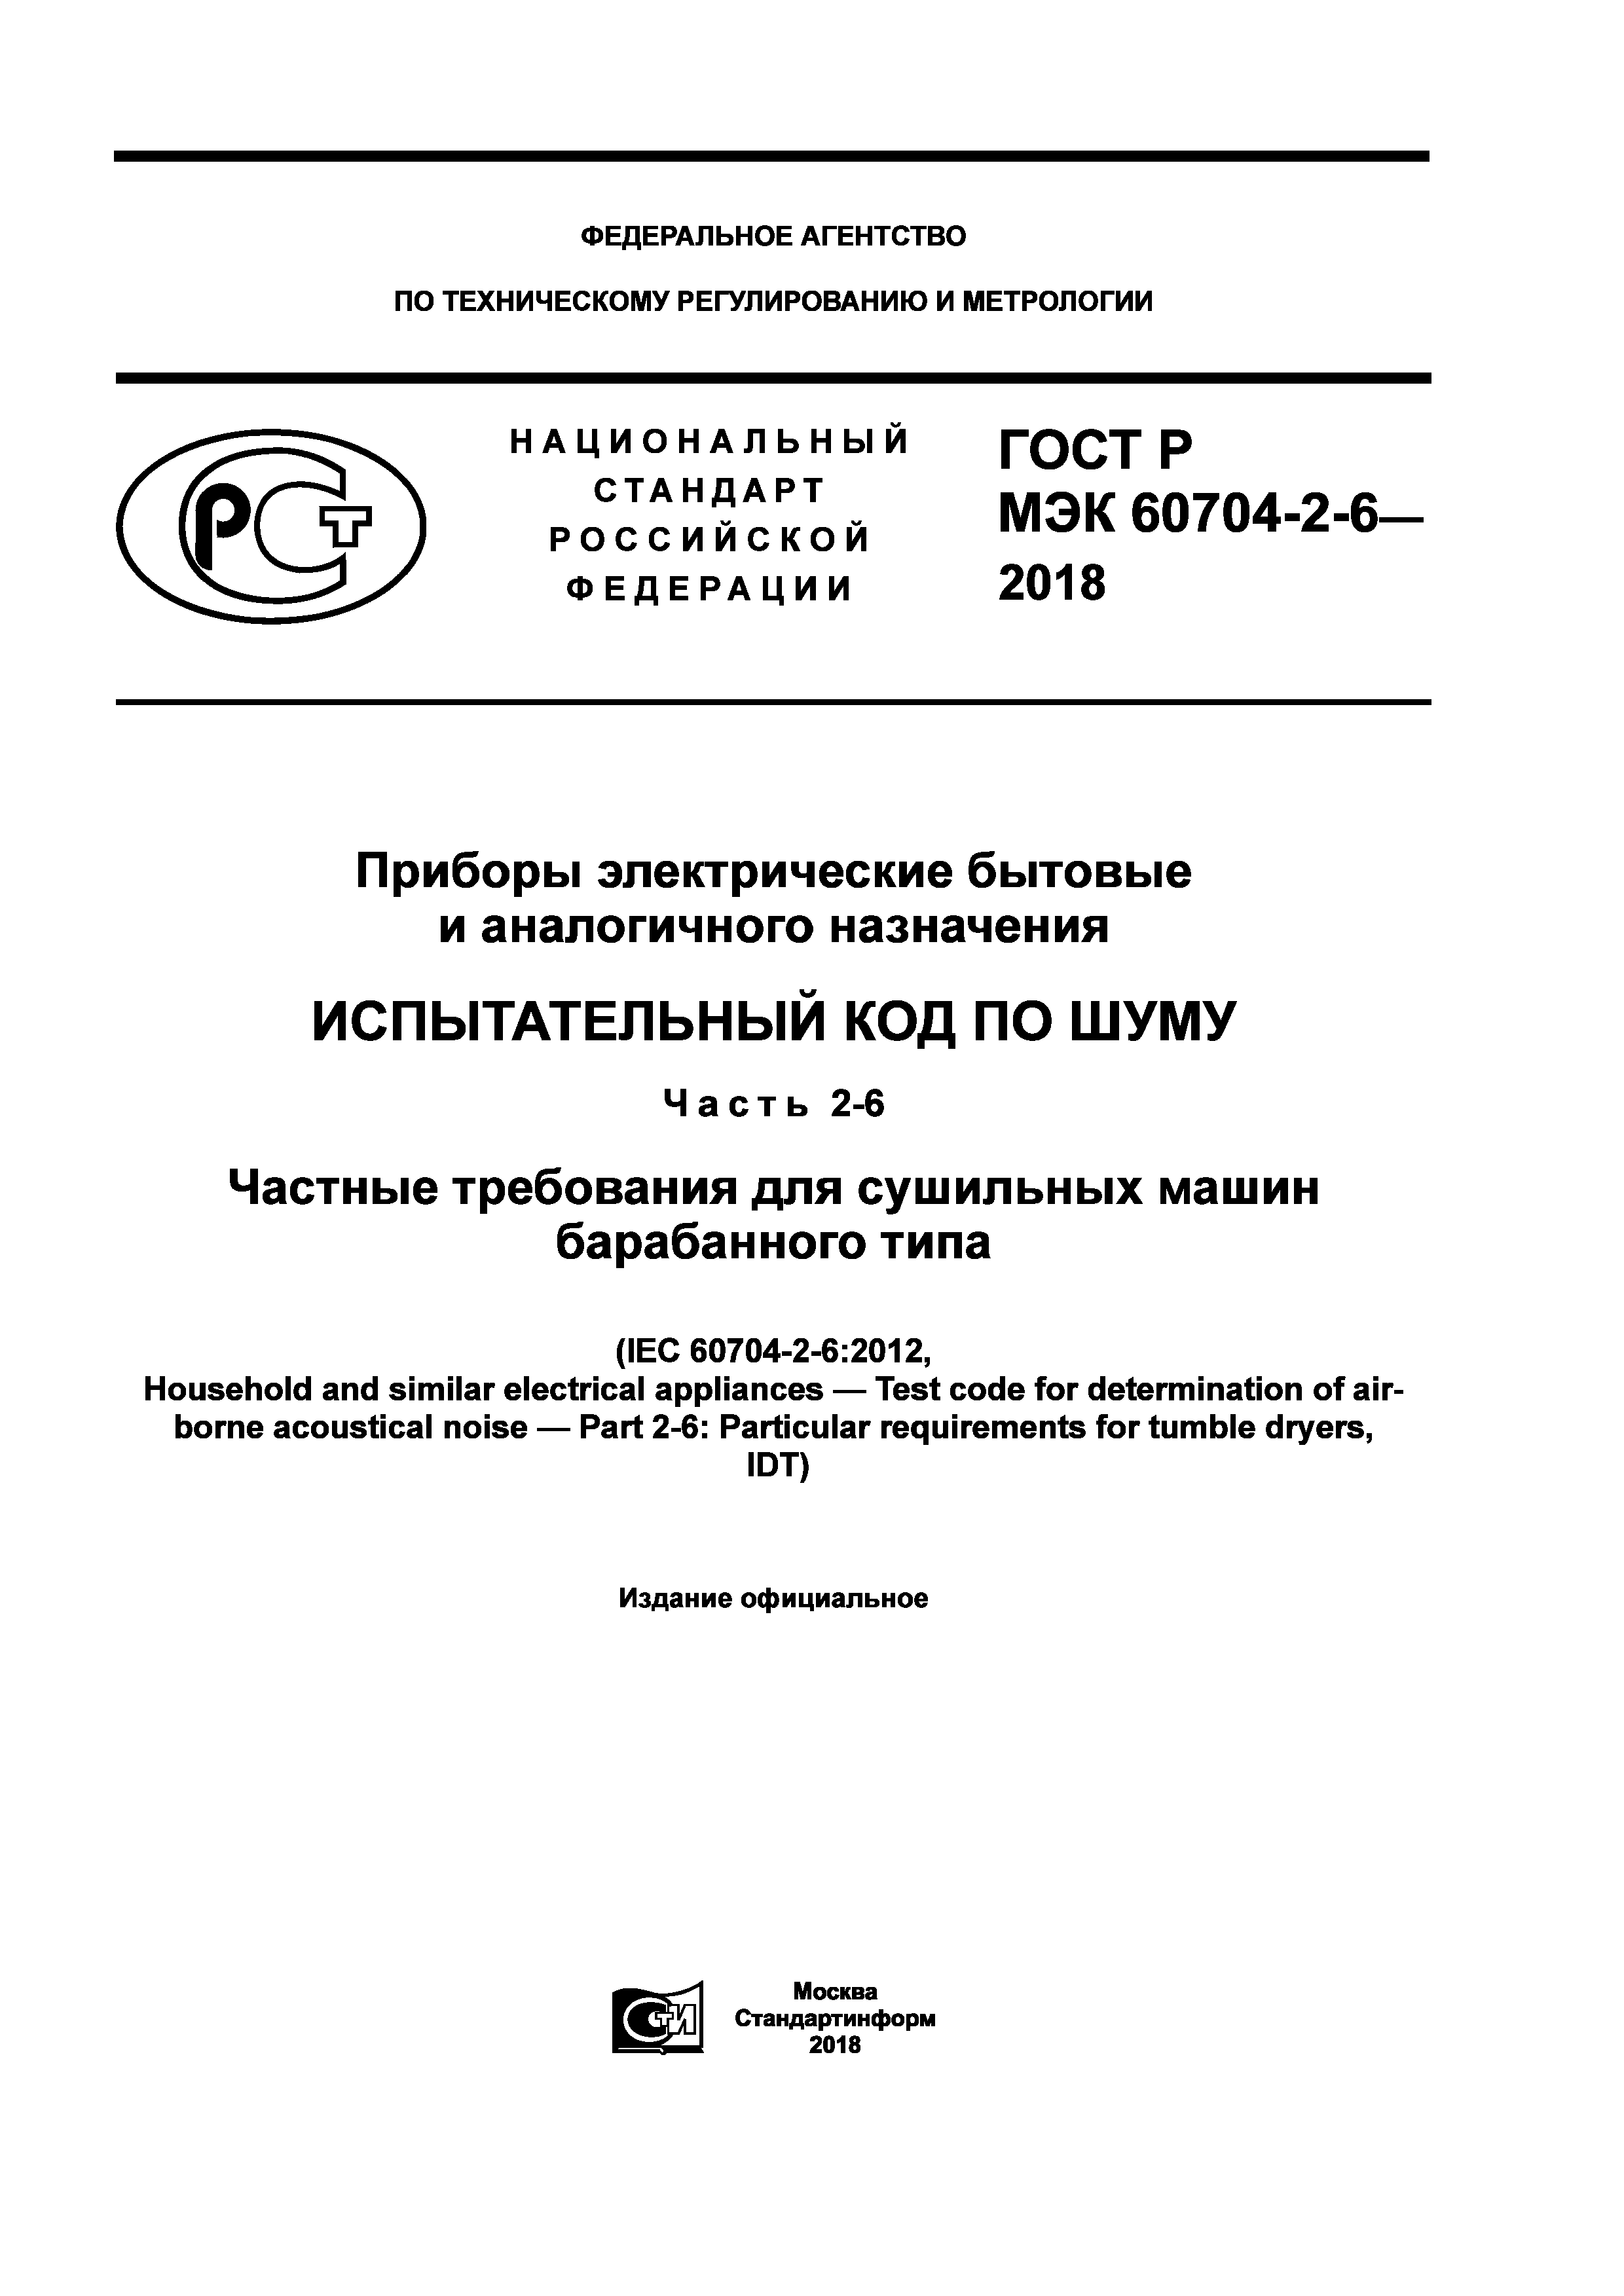 ГОСТ Р МЭК 60704-2-6-2018